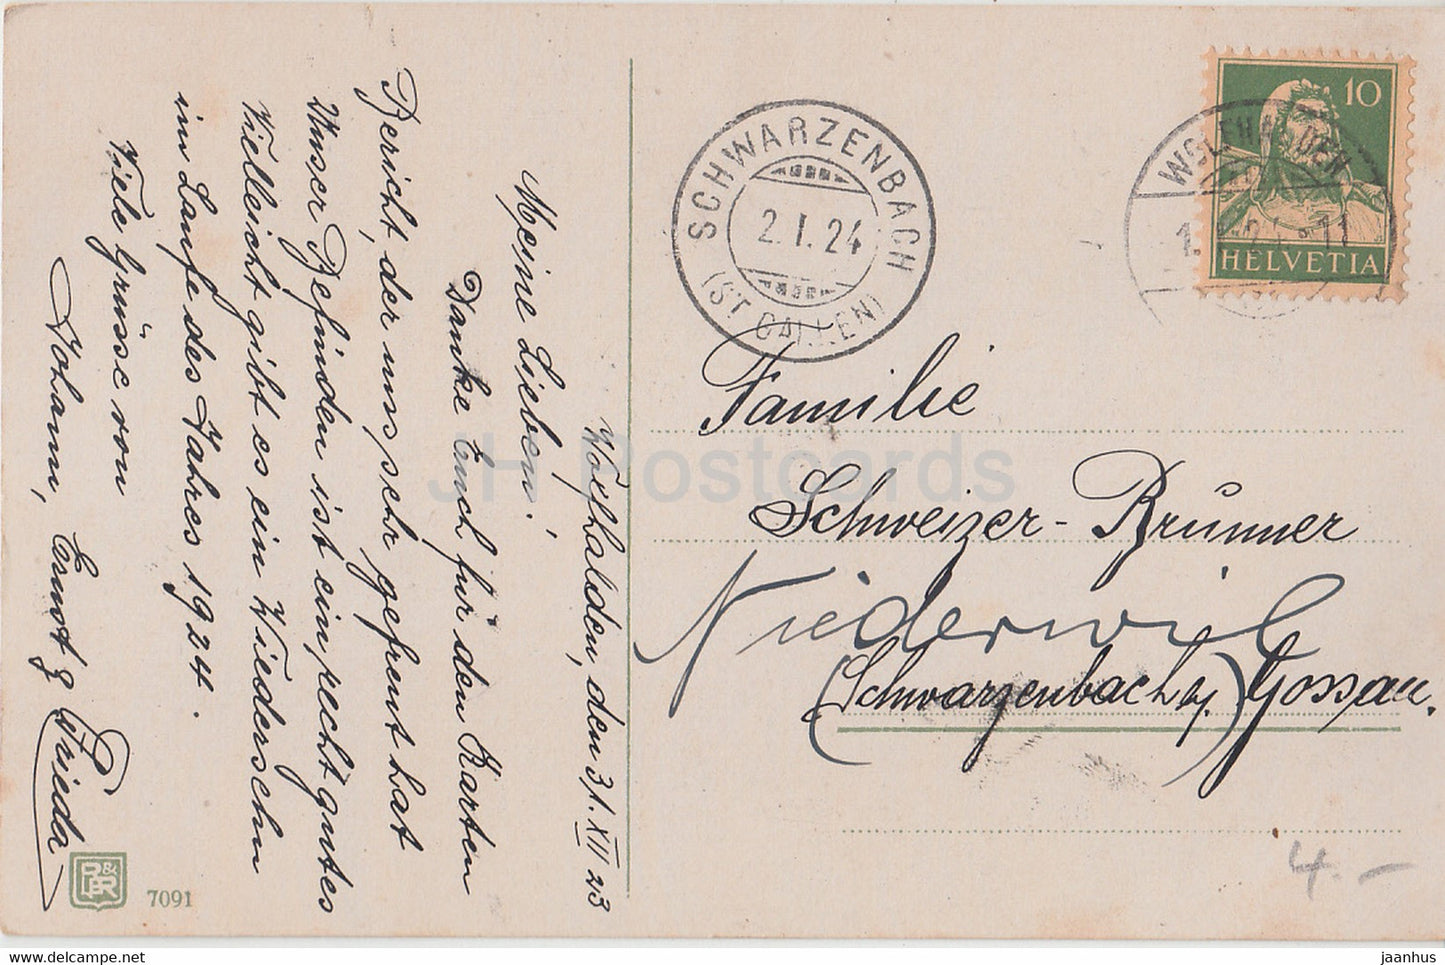 New Year Greeting Card - Die Besten Wunsche zum neuen Jahre - bells - BR 7091 - old postcard - 1924 - Germany - used